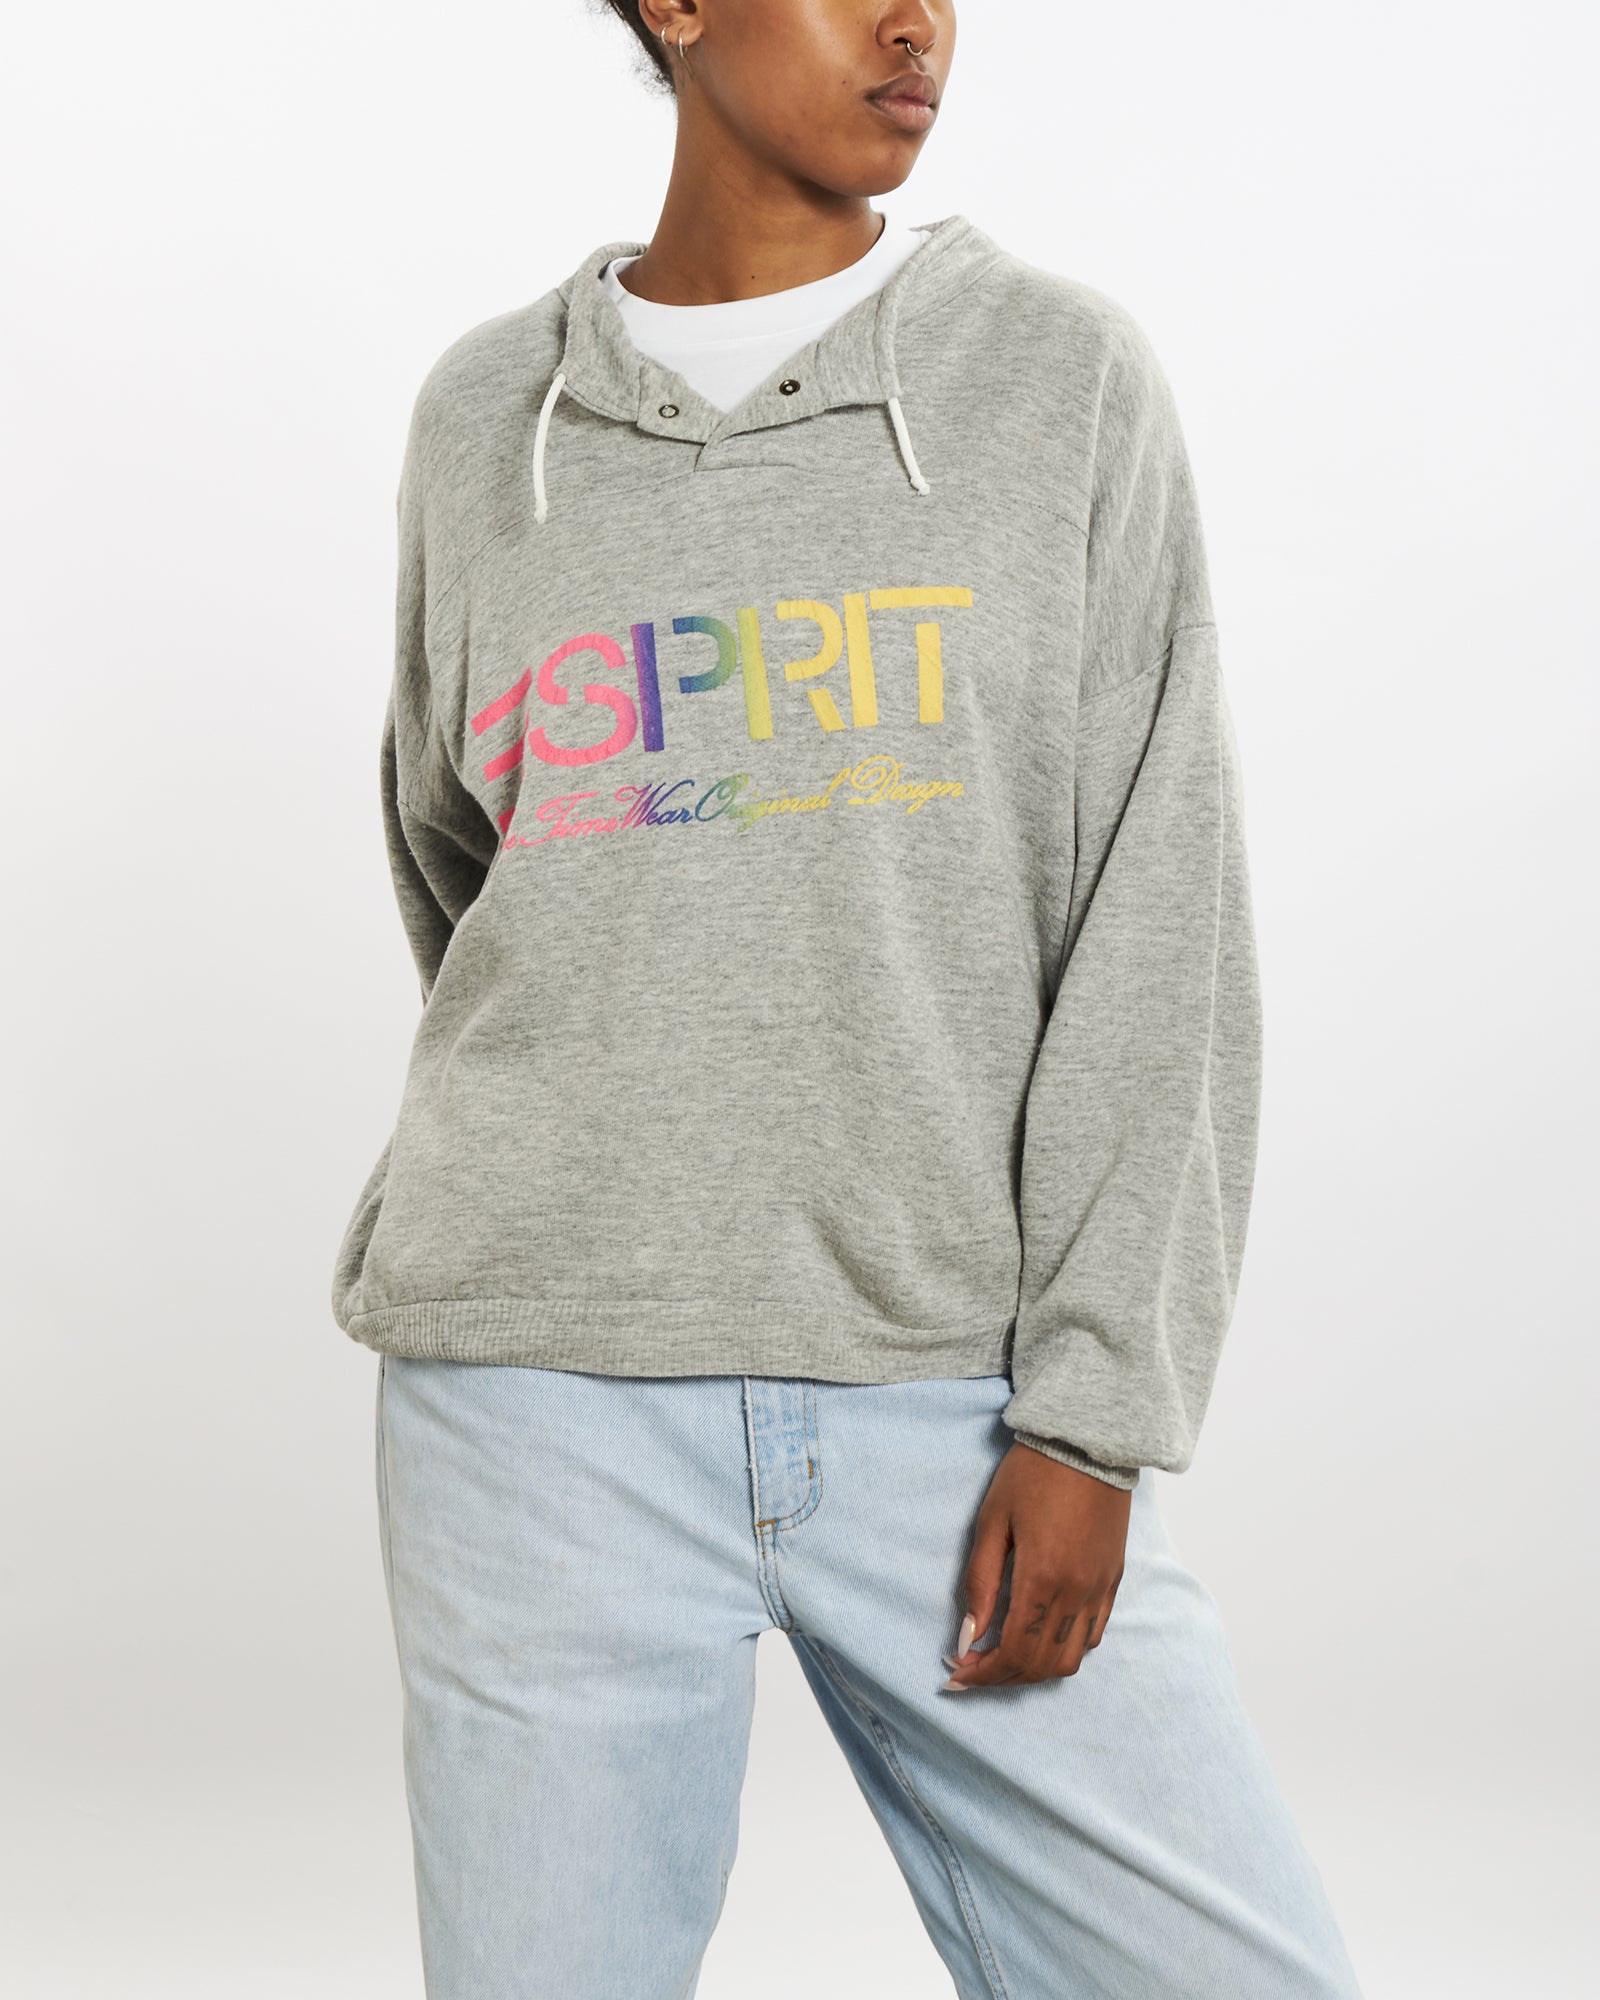 80s Esprit Sweatshirt M – The Real Deal